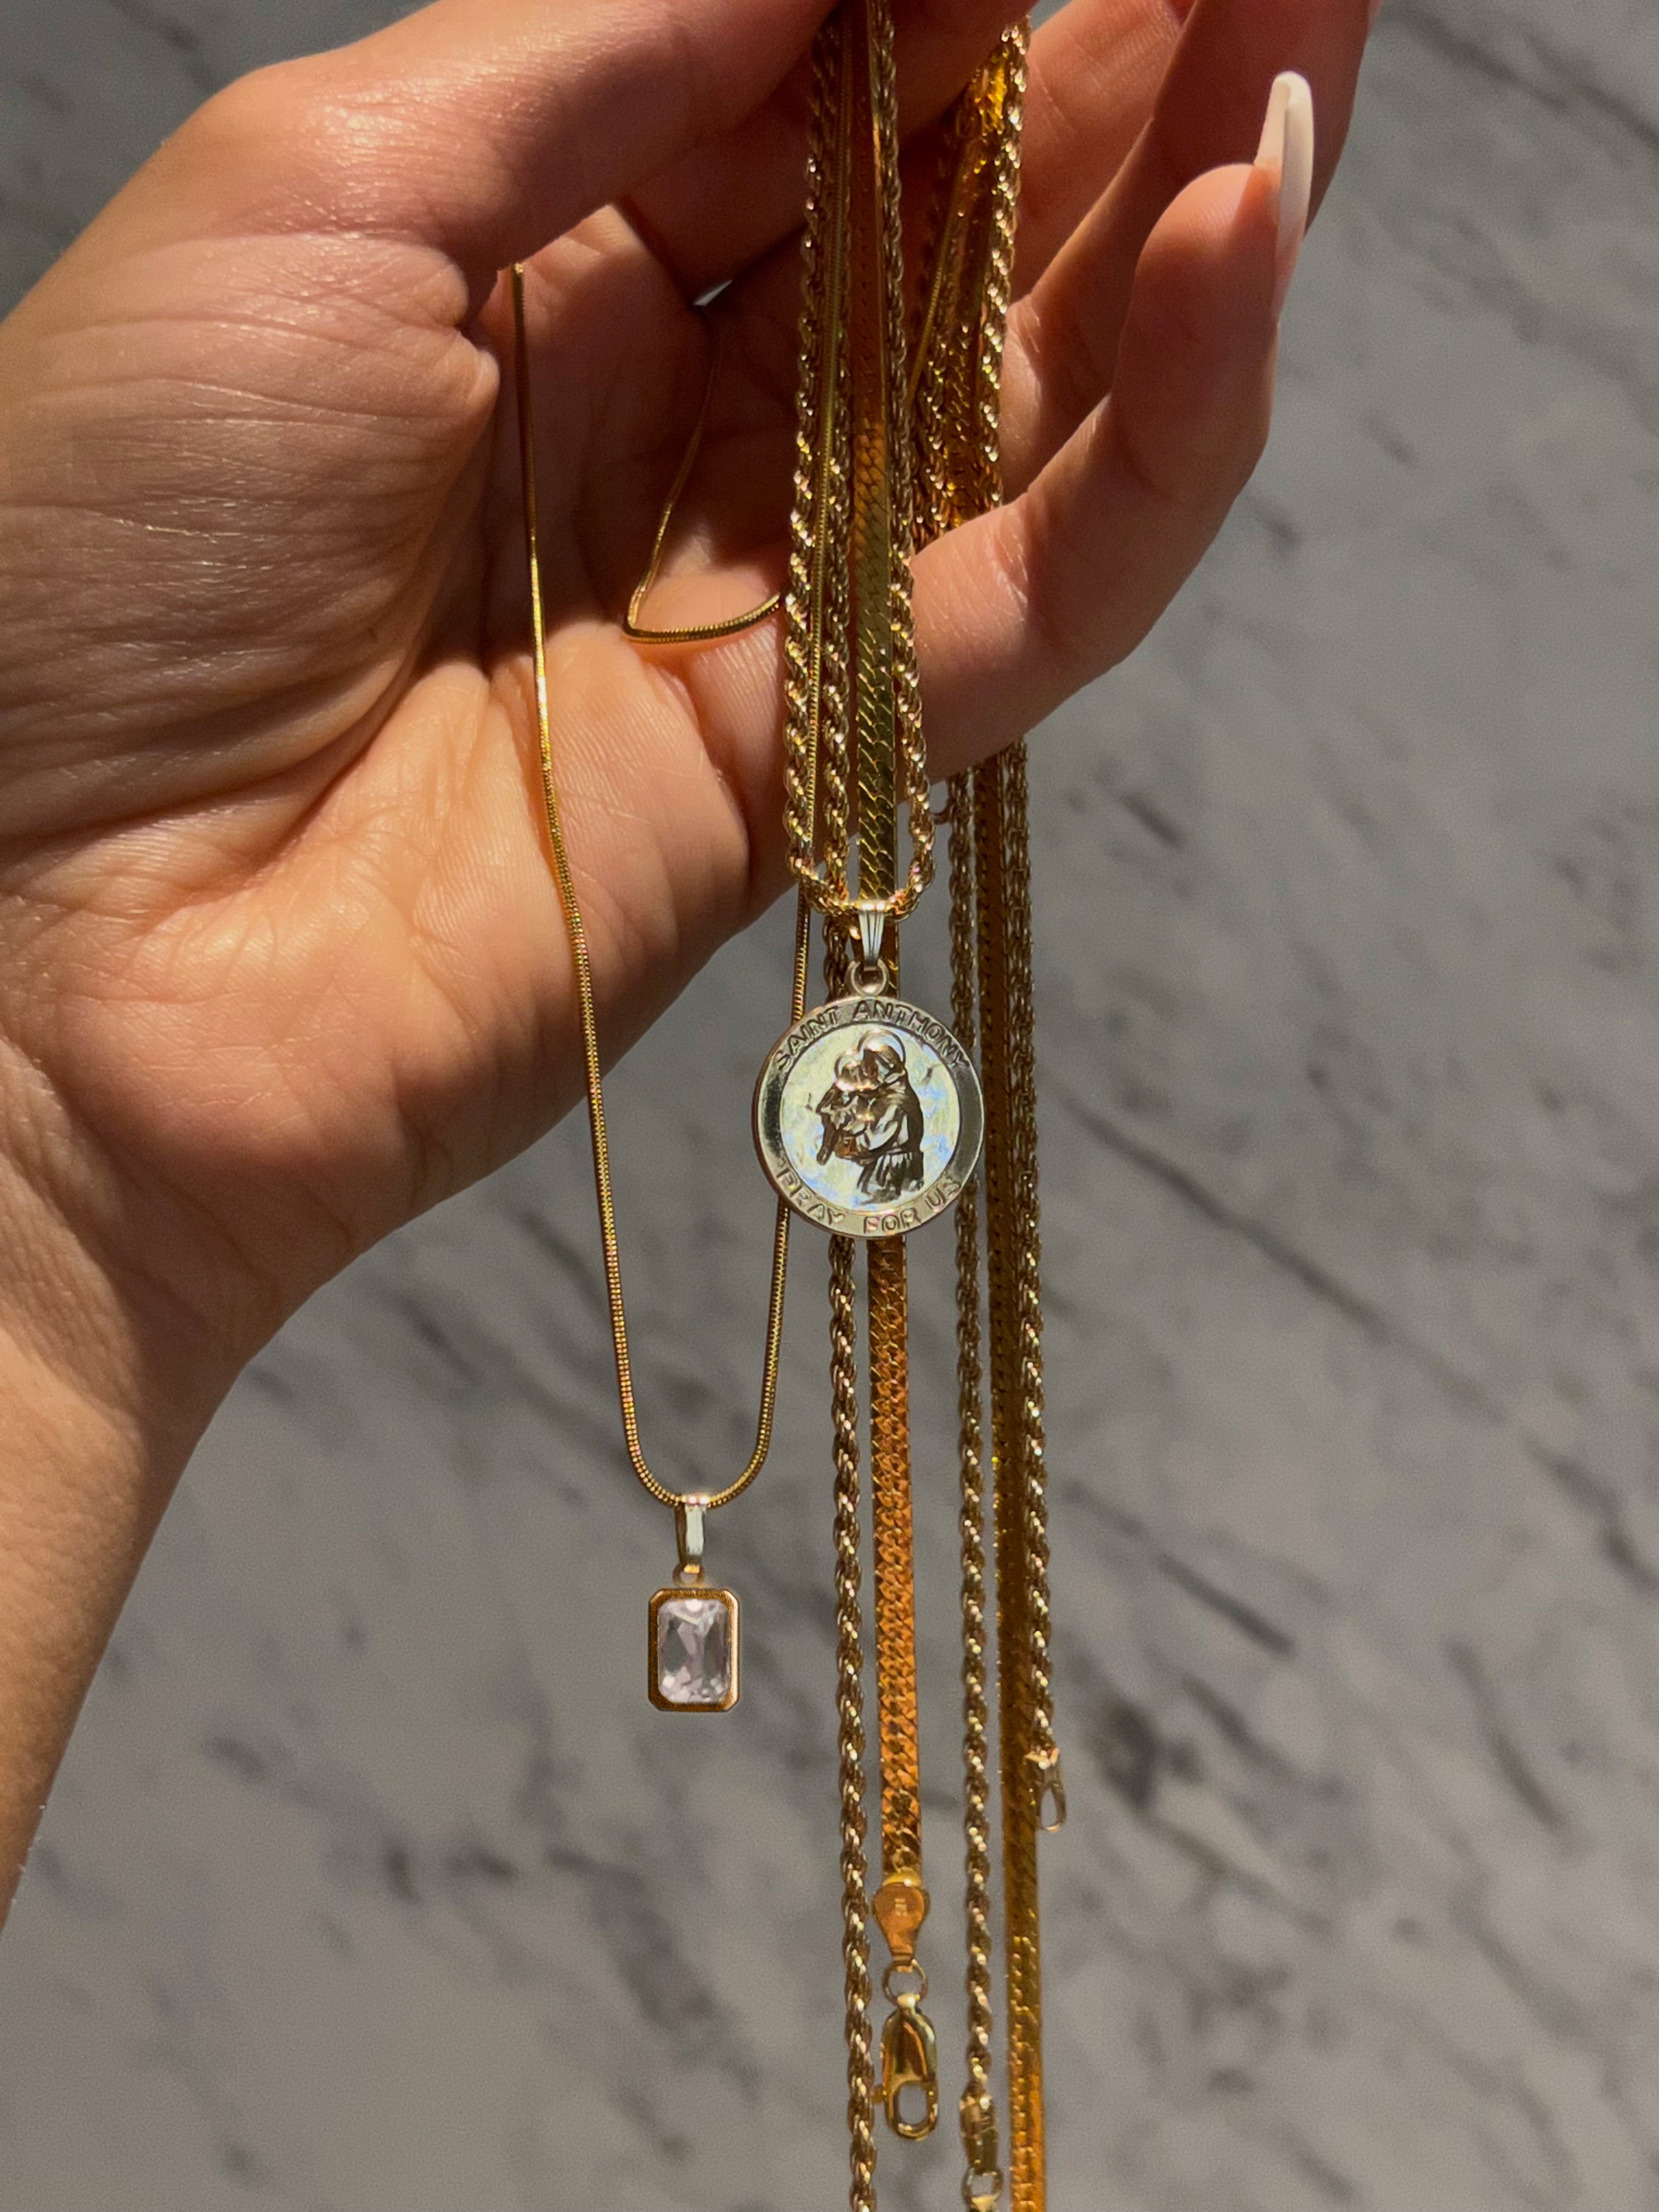 Sofia necklace